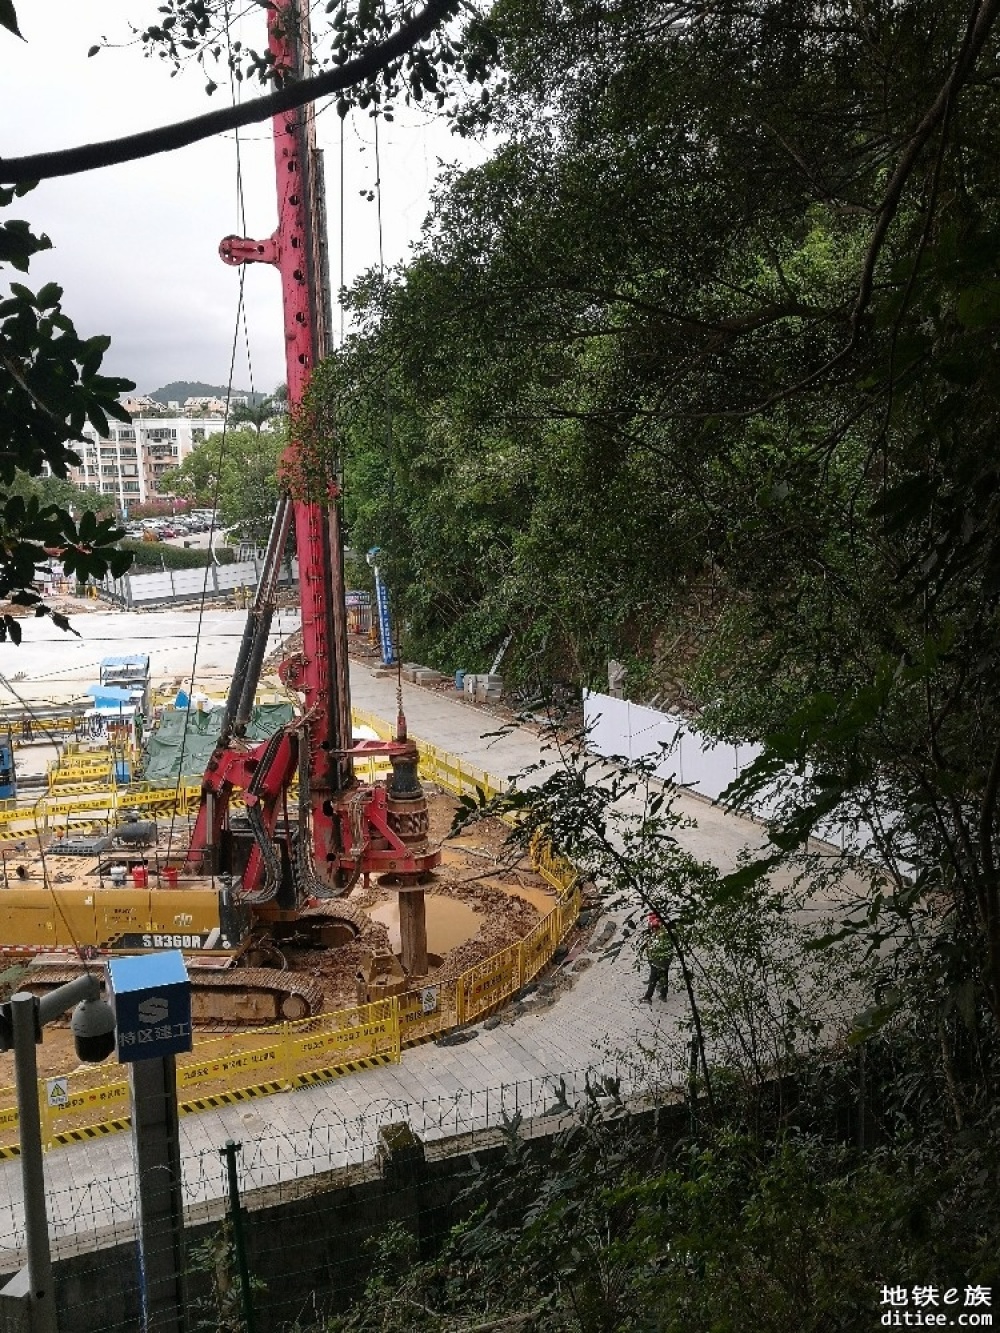 深圳地铁17号线项目丹竹头站首根钻孔灌注桩顺利开钻